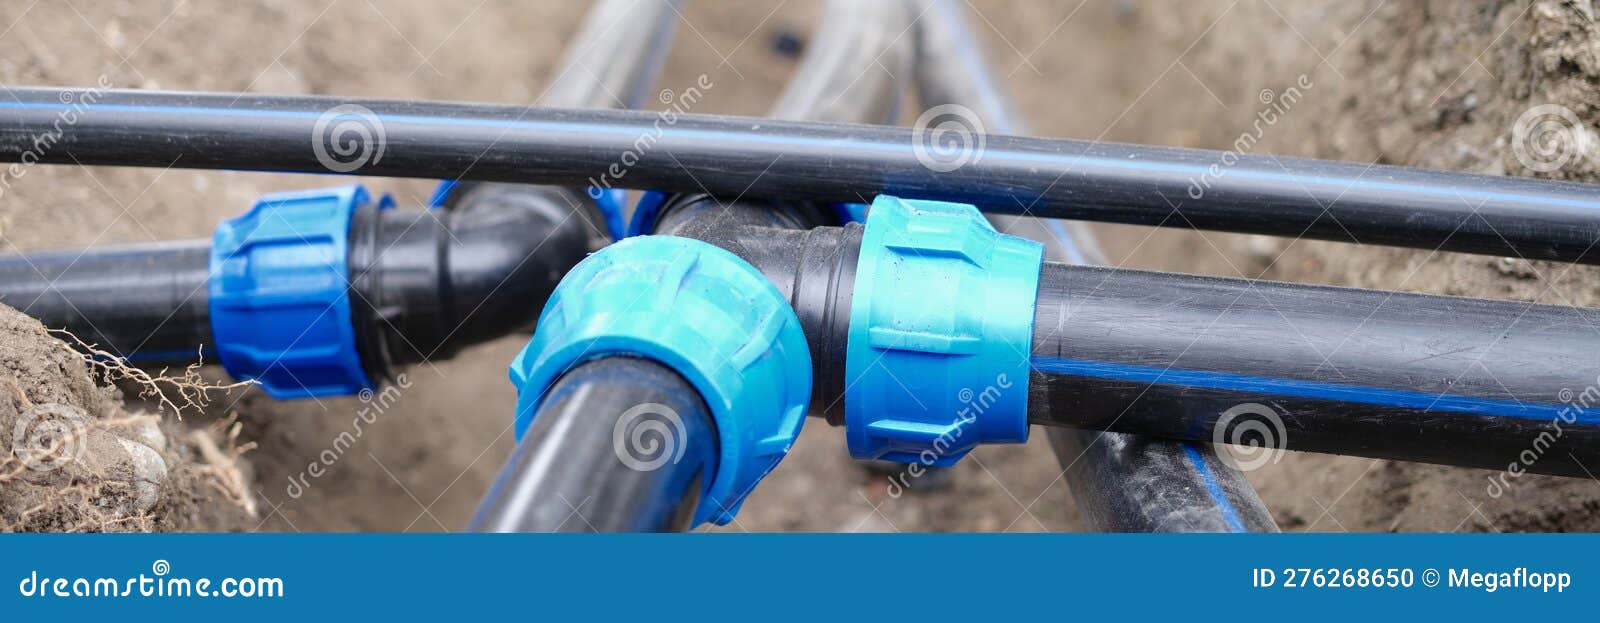 Canalisation D'eau Ou Système D'irrigation Souterrain Photo stock - Image  du hydrostatique, aqueduc: 276268650